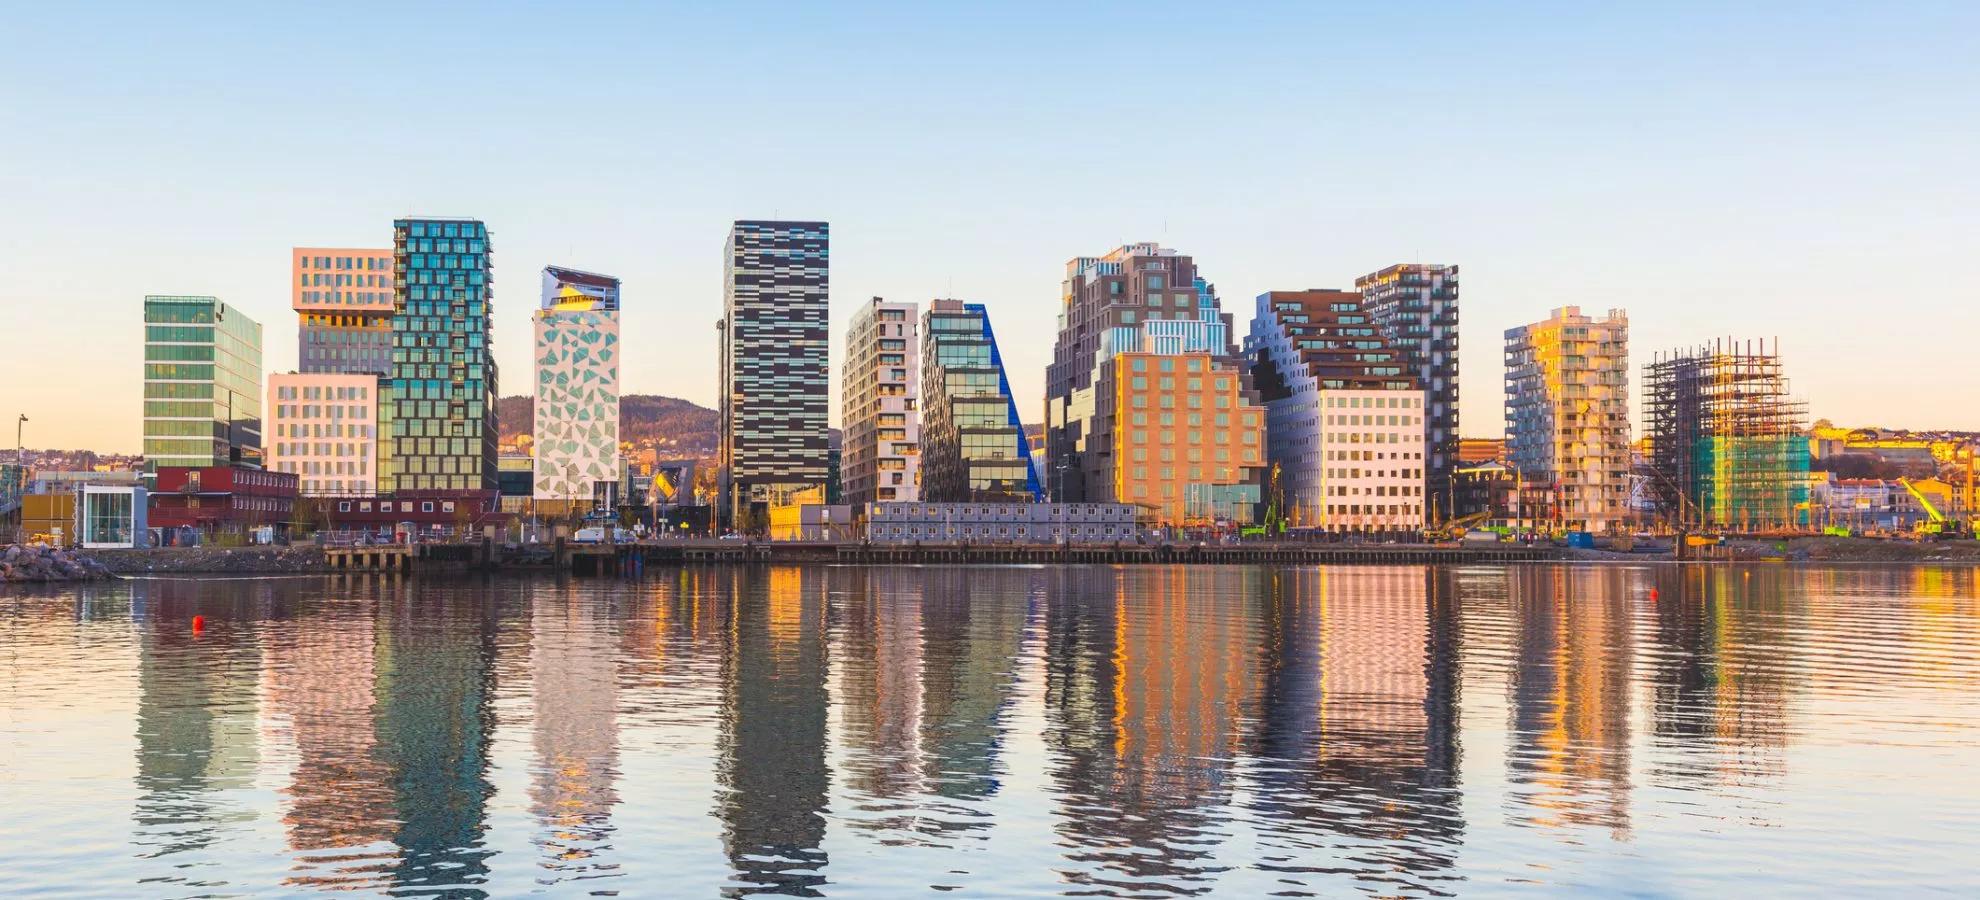 Oslo - moderne gebouwen aan het water